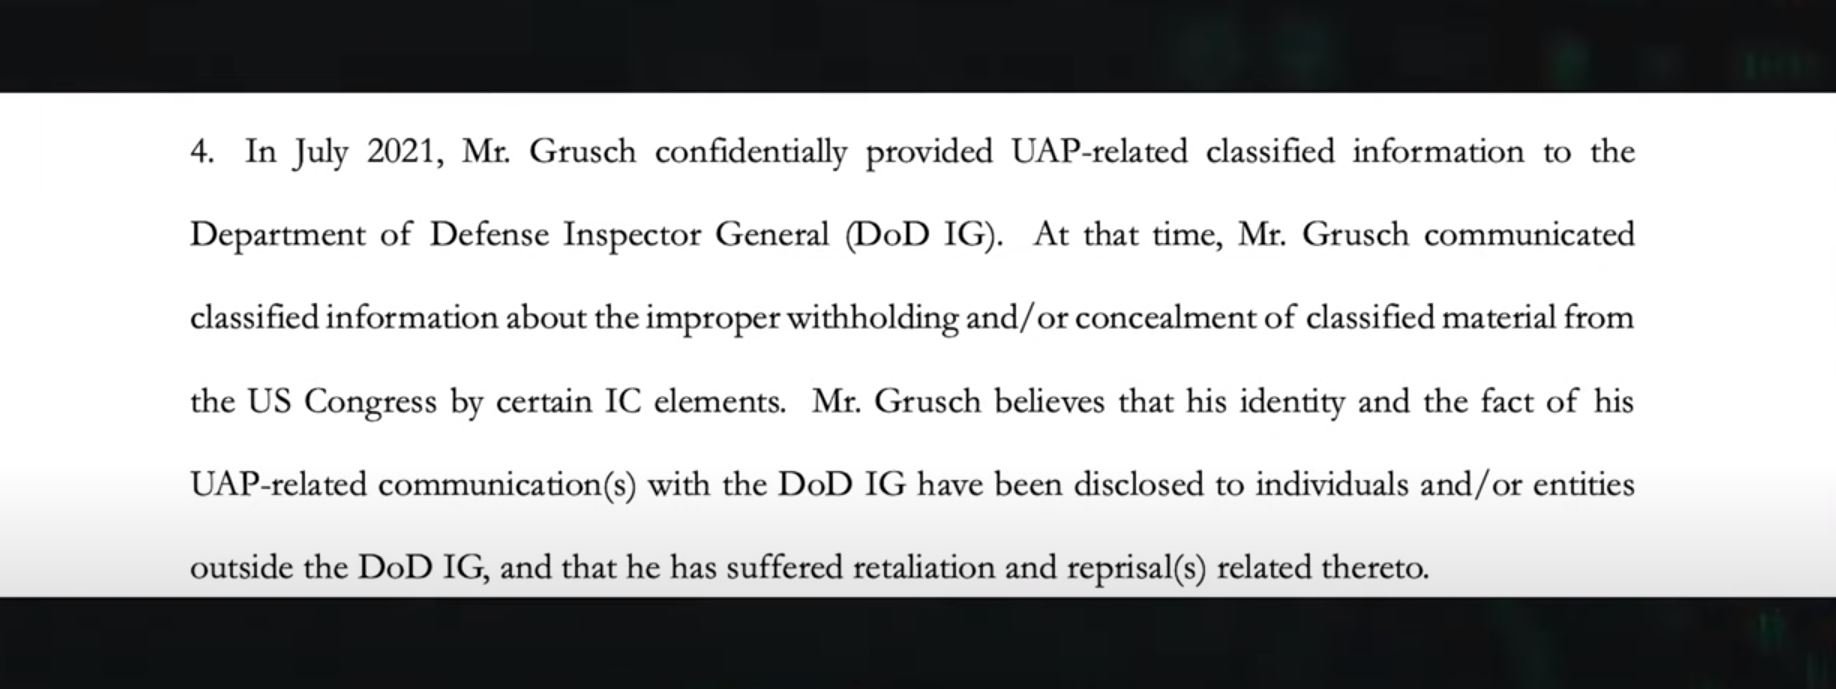 Um documento oficial confirma que, em 2021, Grusch relatou o caso ao Departamento de Defesa dos Estados Unidos.